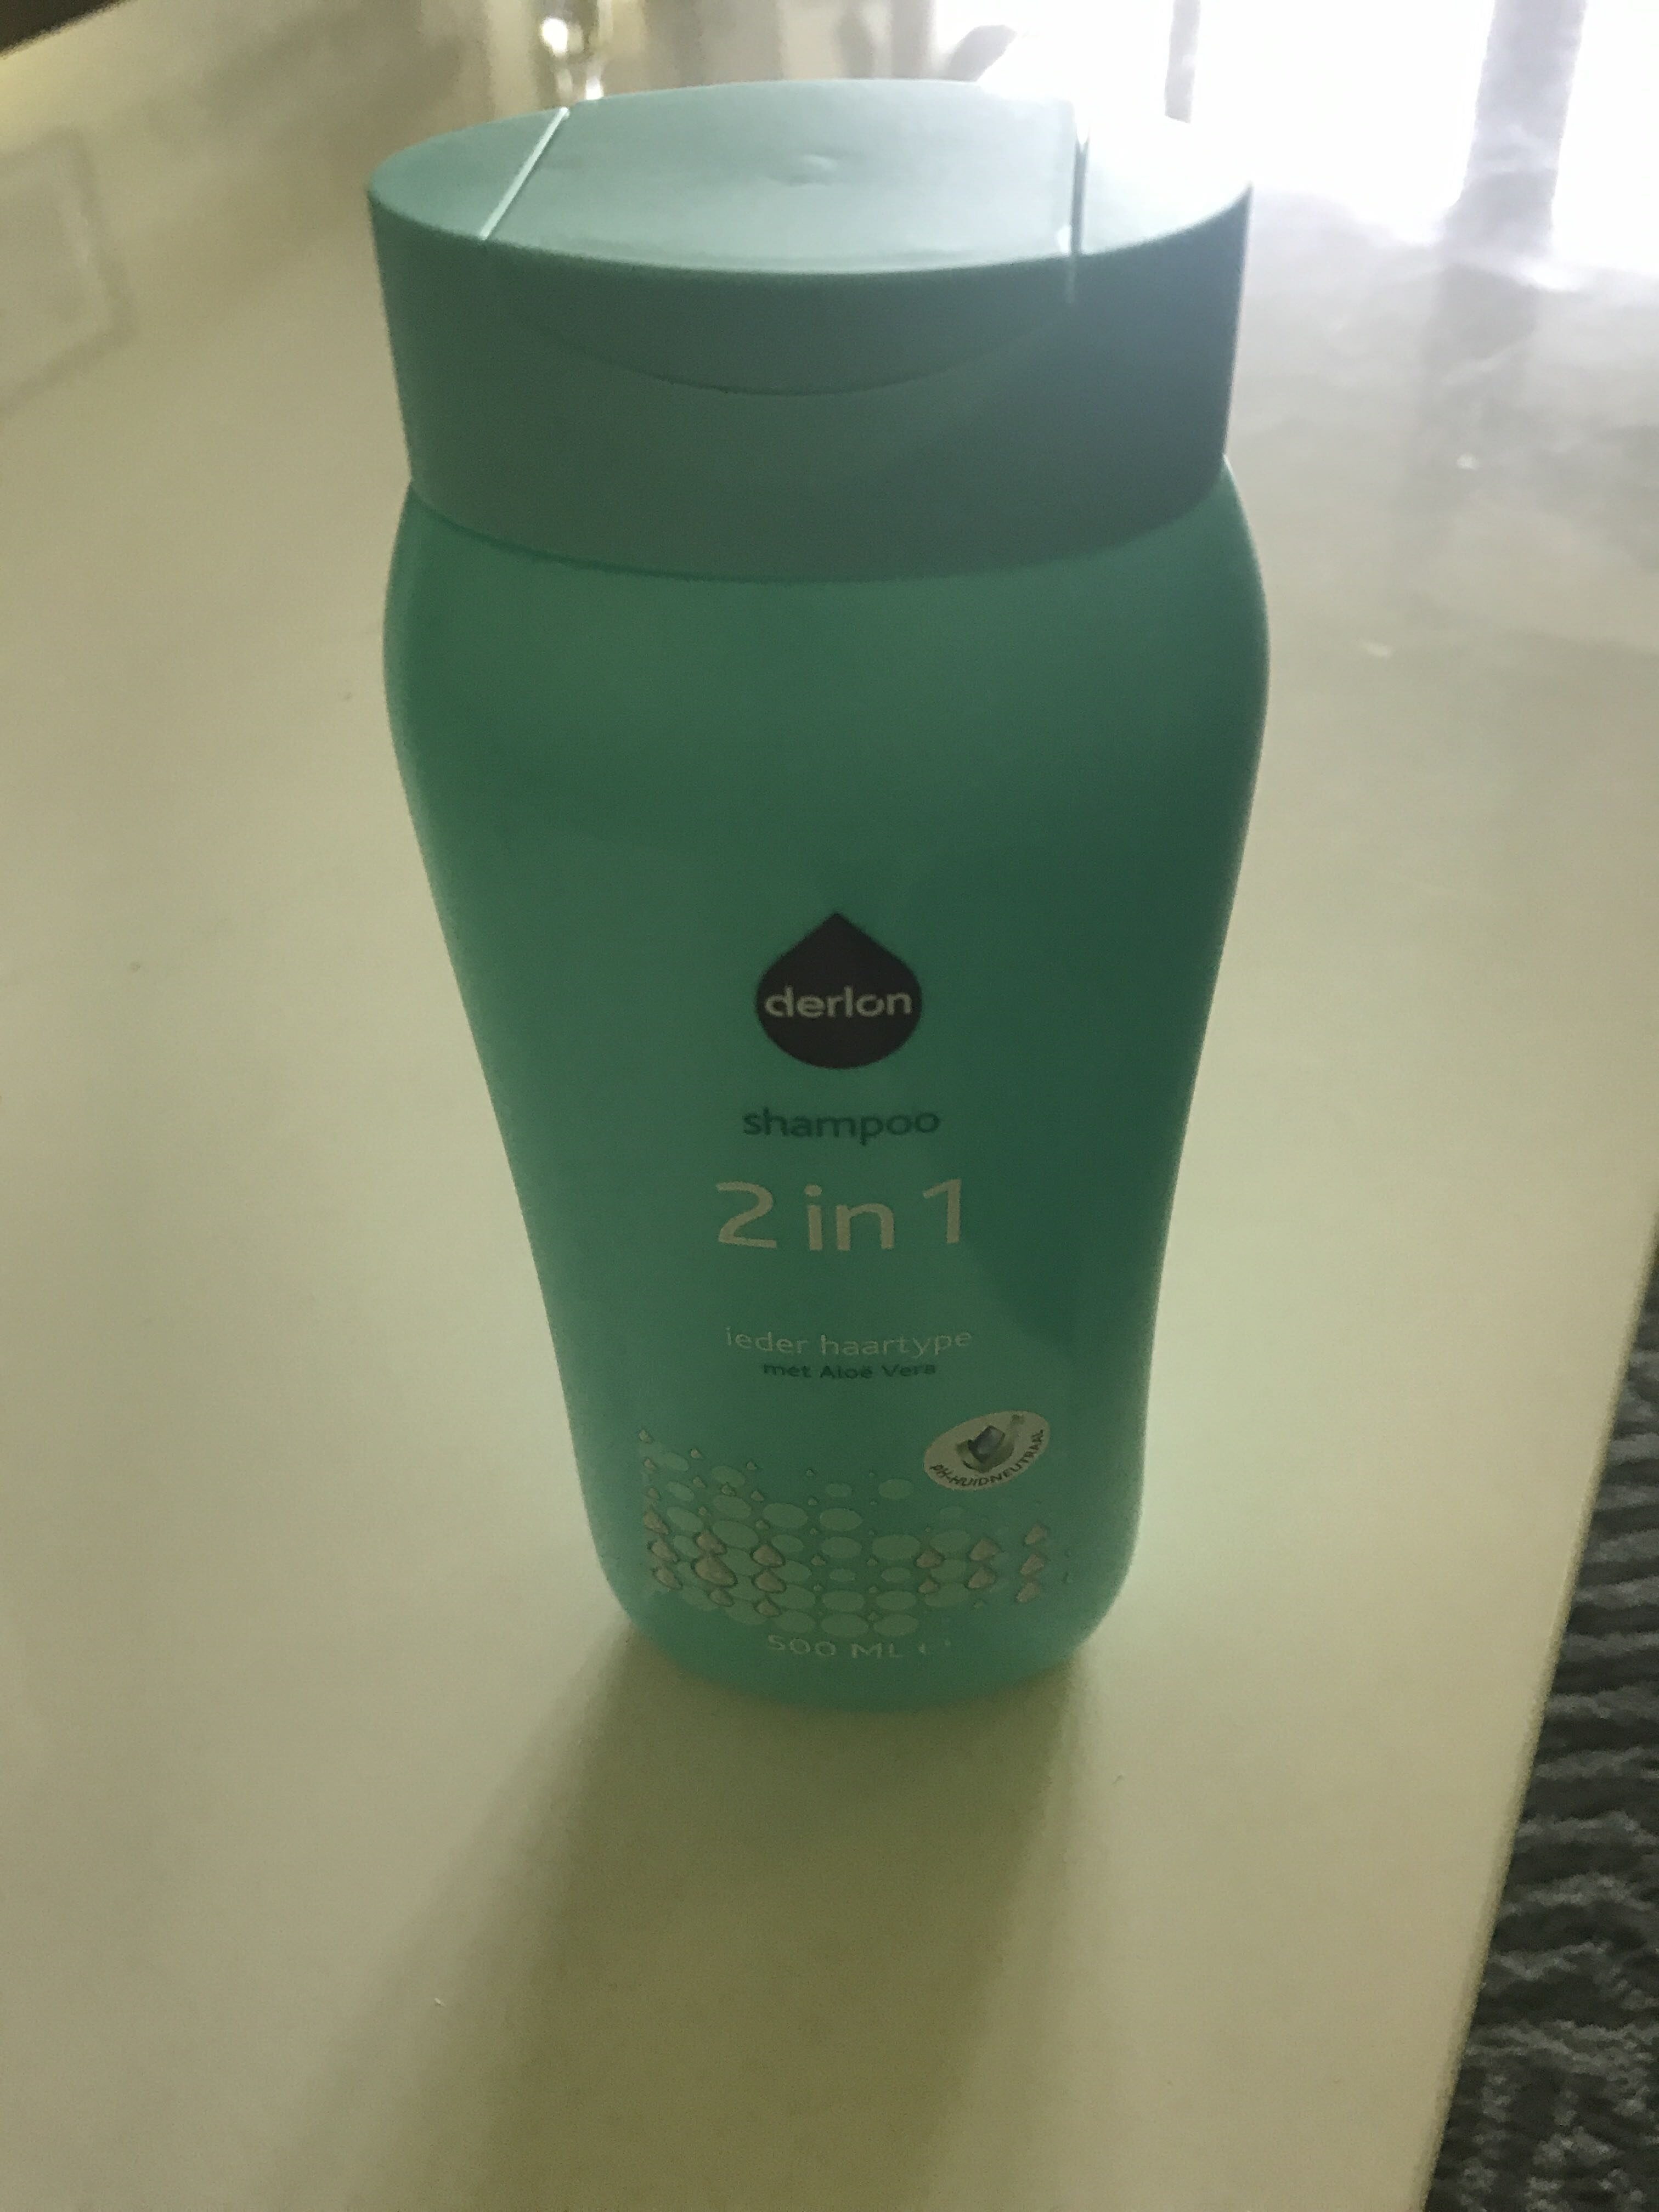 Shampoo 2 in 1 (aloe vera) - Produkt - en